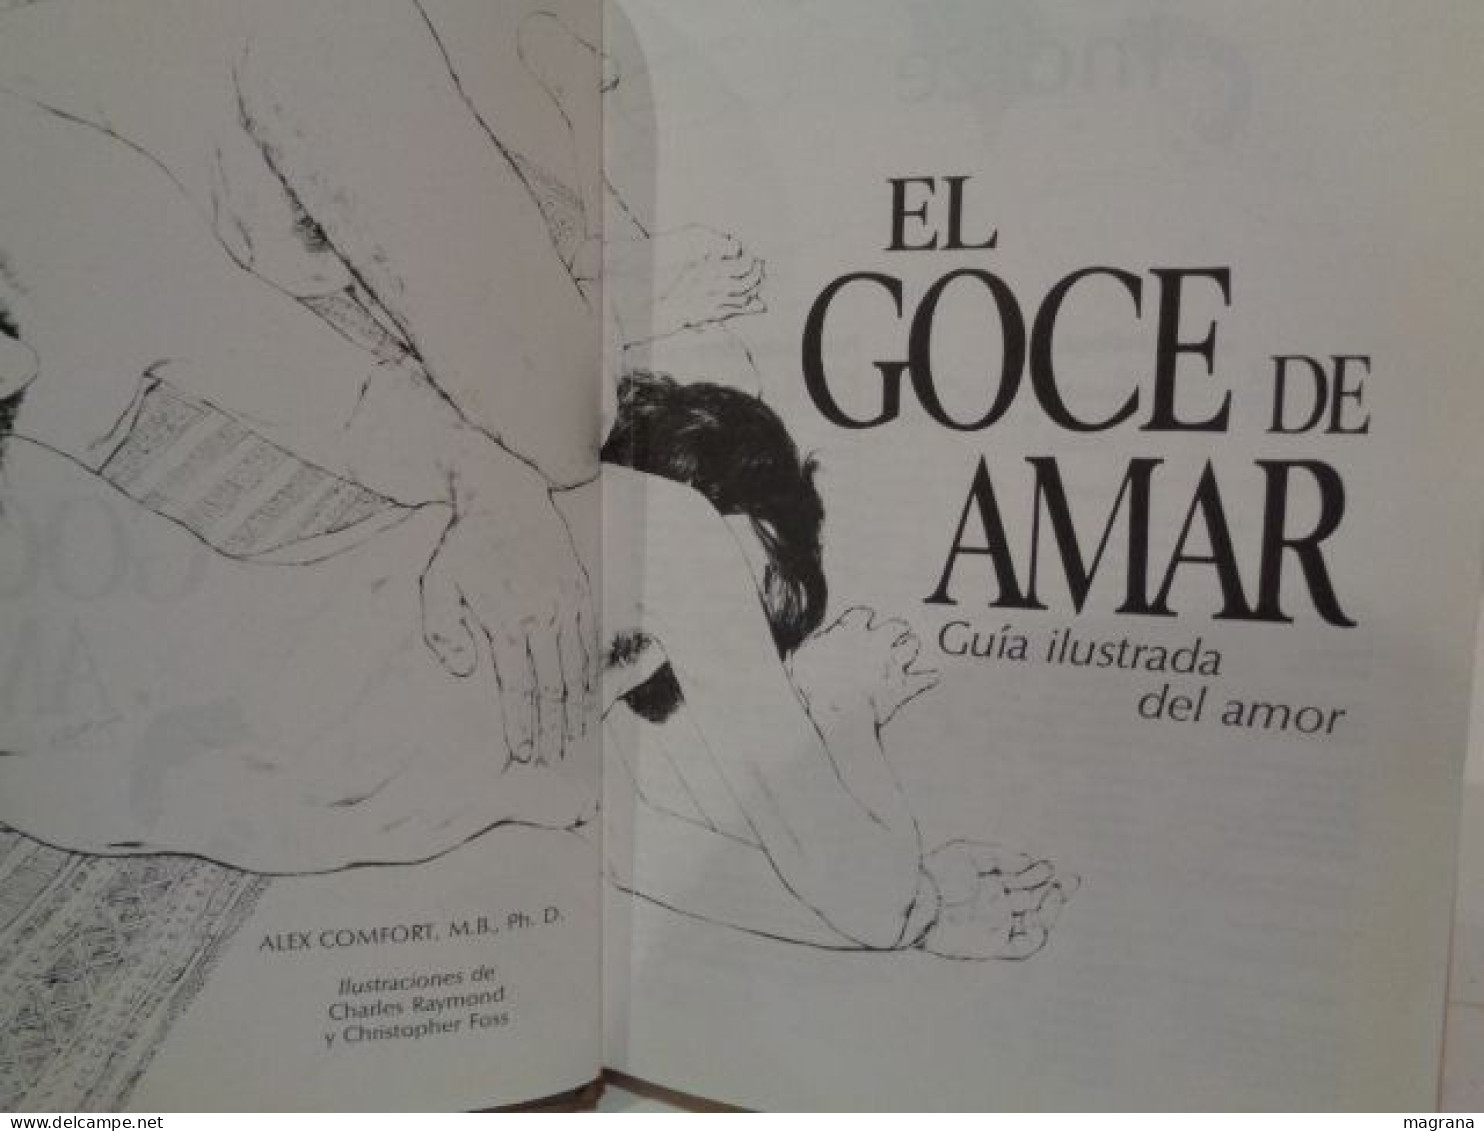 El Goce De Amar. The Joy Of Sex. Guía Ilustrada Del Amor. Dr. Alex Comfort. Editorial Circulo De Lectores. 1991. 256 Pp. - Cultura